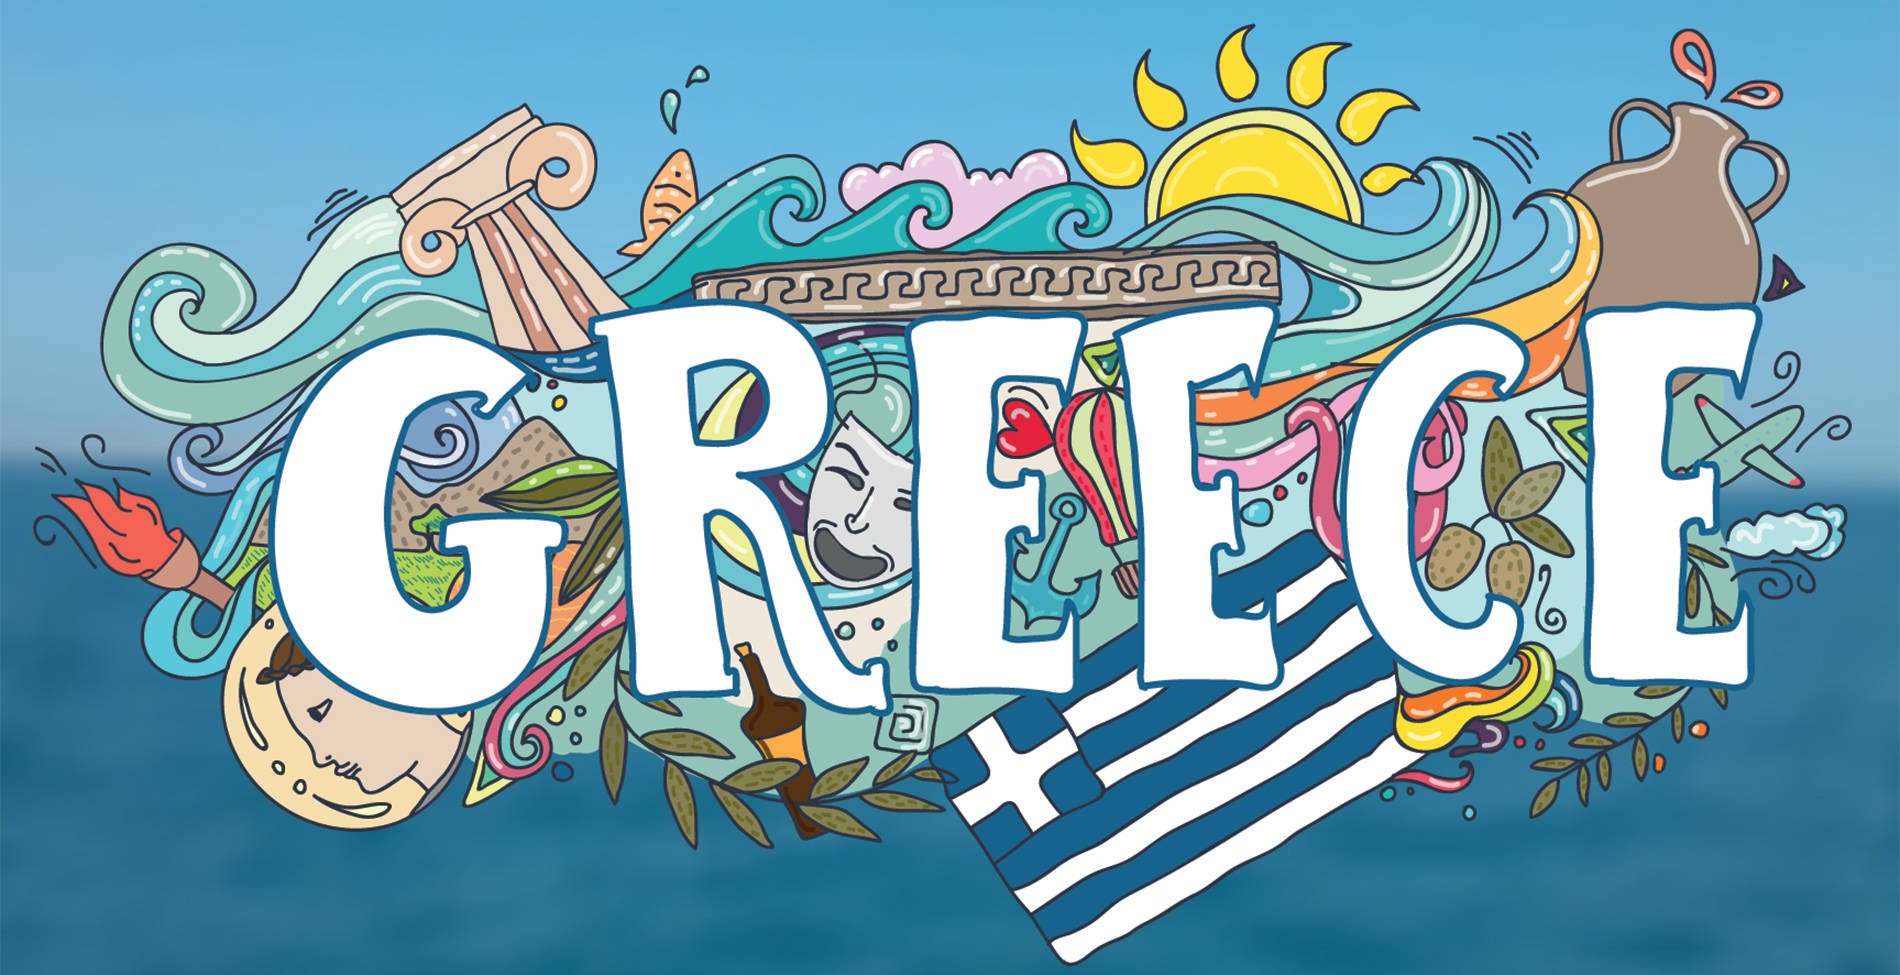 Γιατί λεγόμαστε Greece κι όχι Hellas;